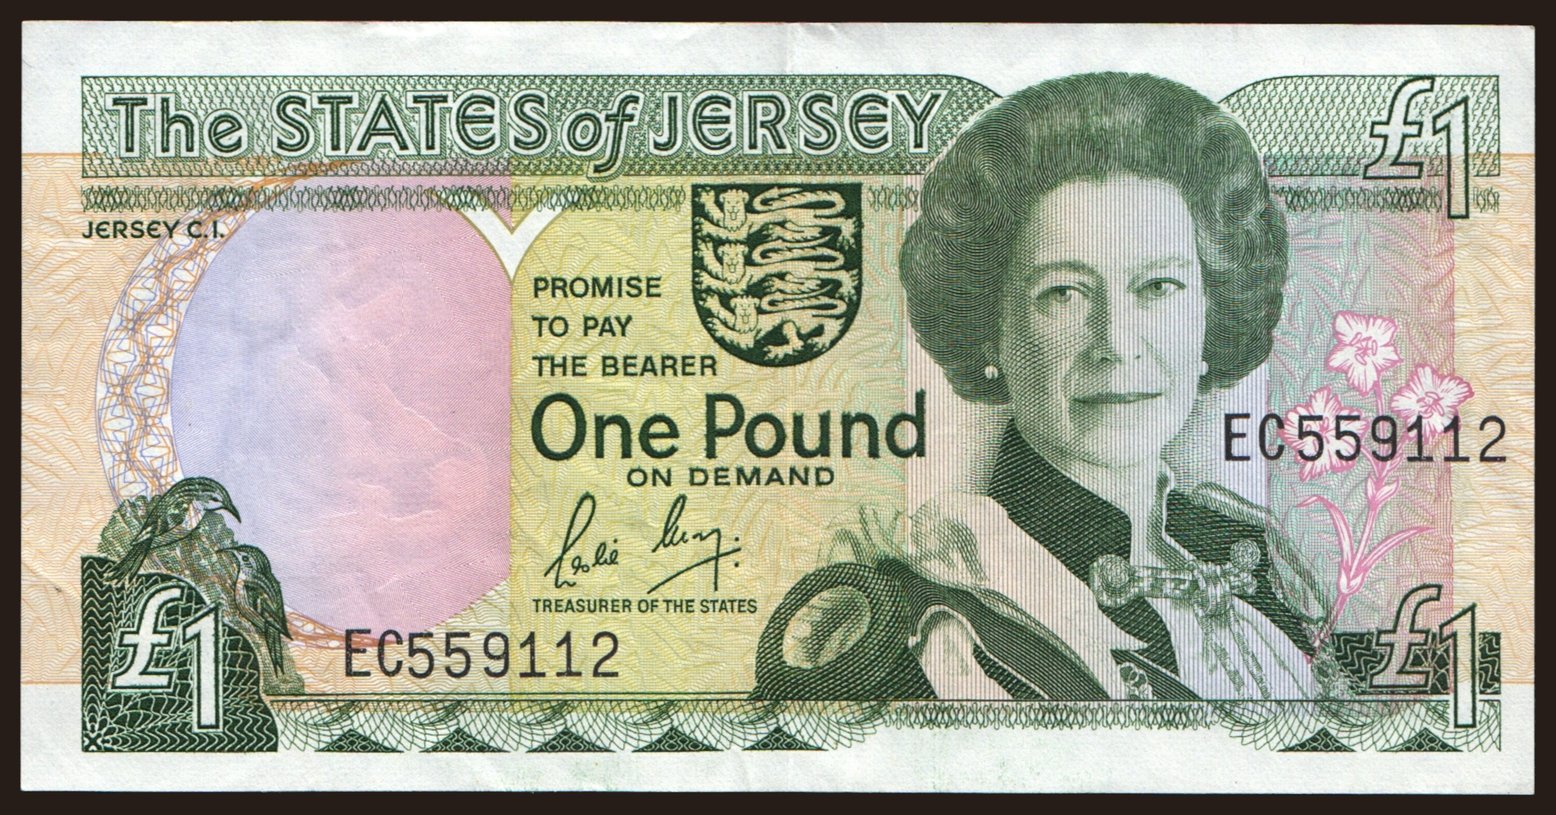 1 pound, 1989